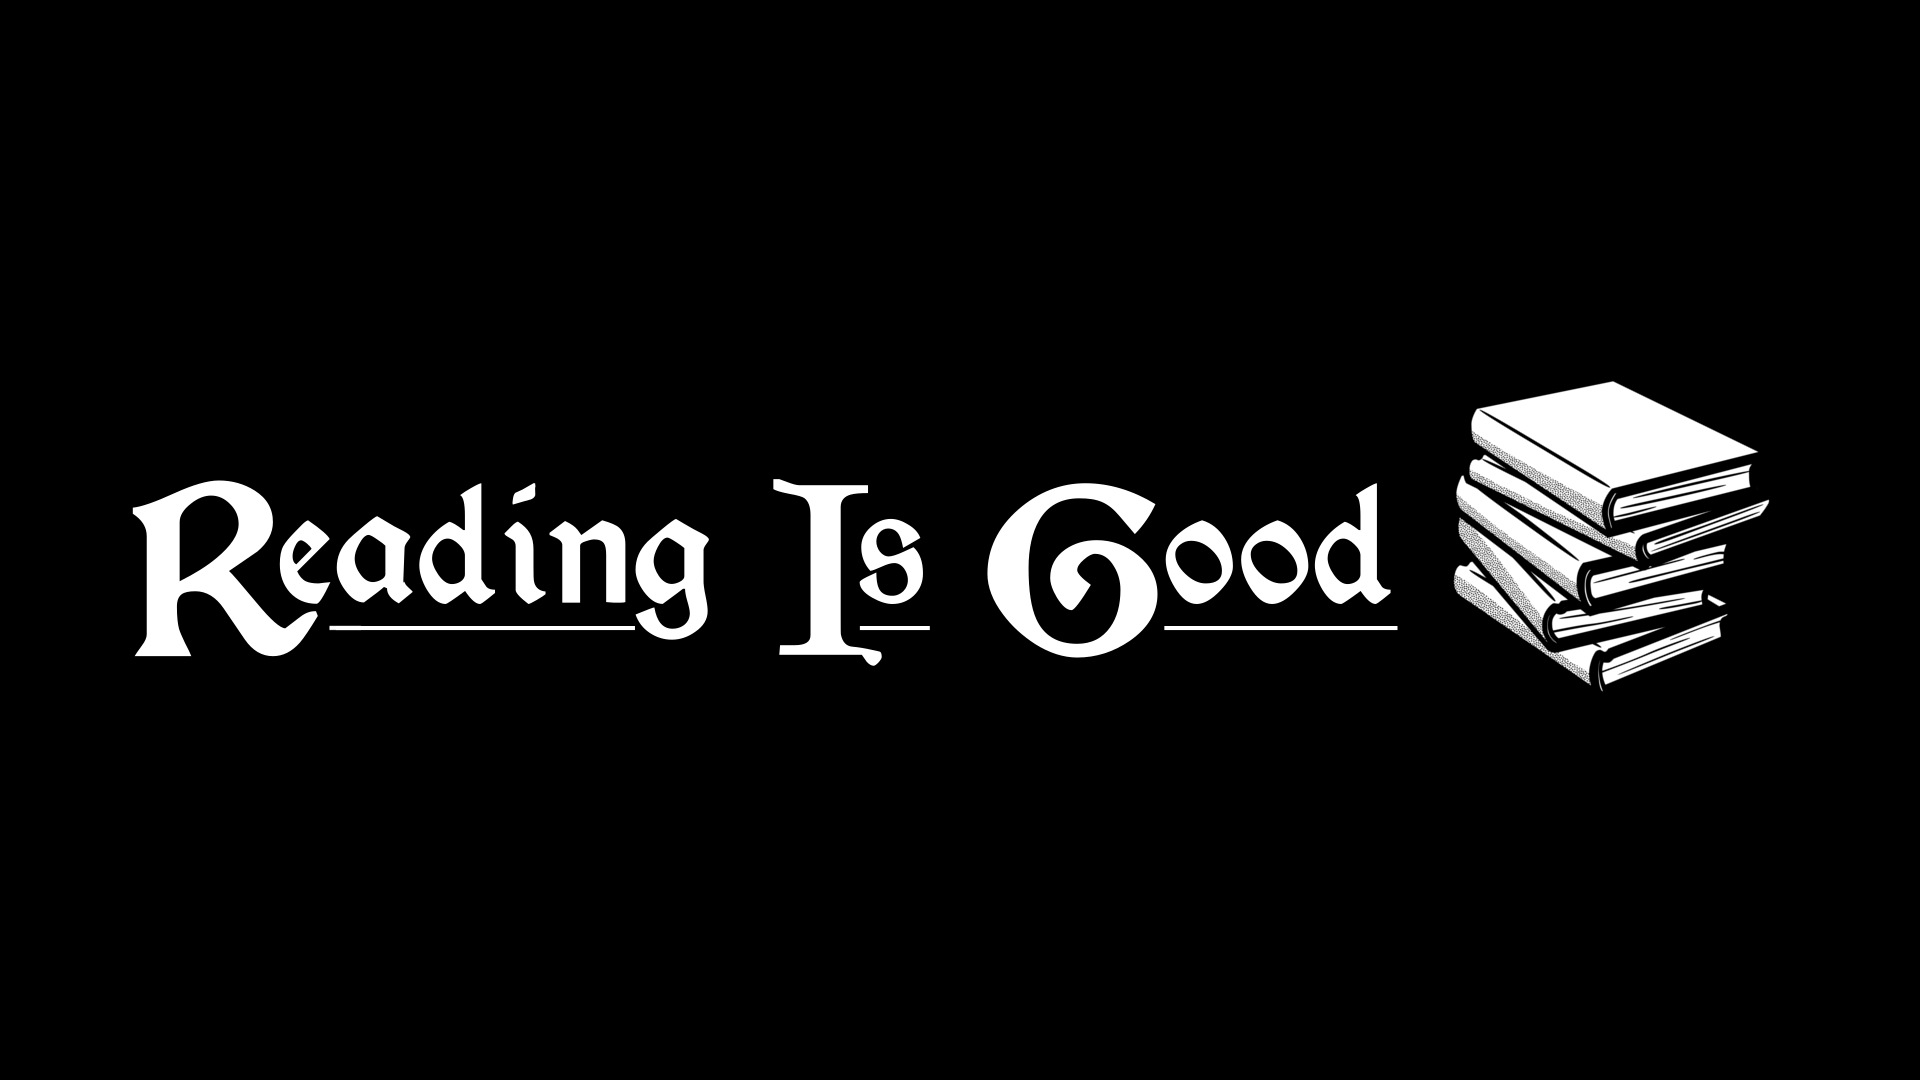 Reading Is Good 日本語化対応 スキル レベリング Skyrim Special Edition Mod データベース Mod紹介 まとめサイト